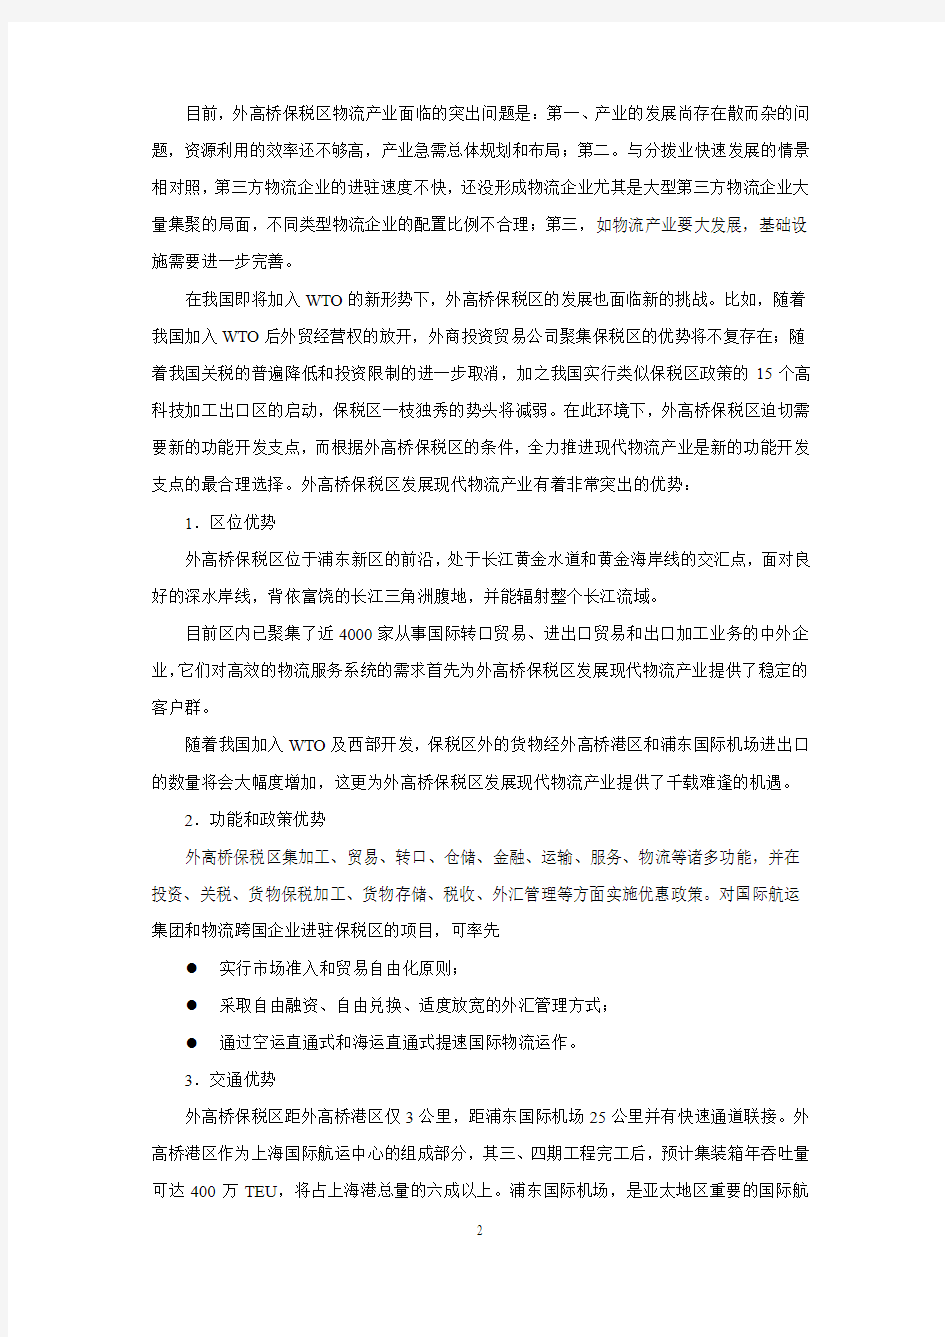 上海外高桥保税区物流产业规划